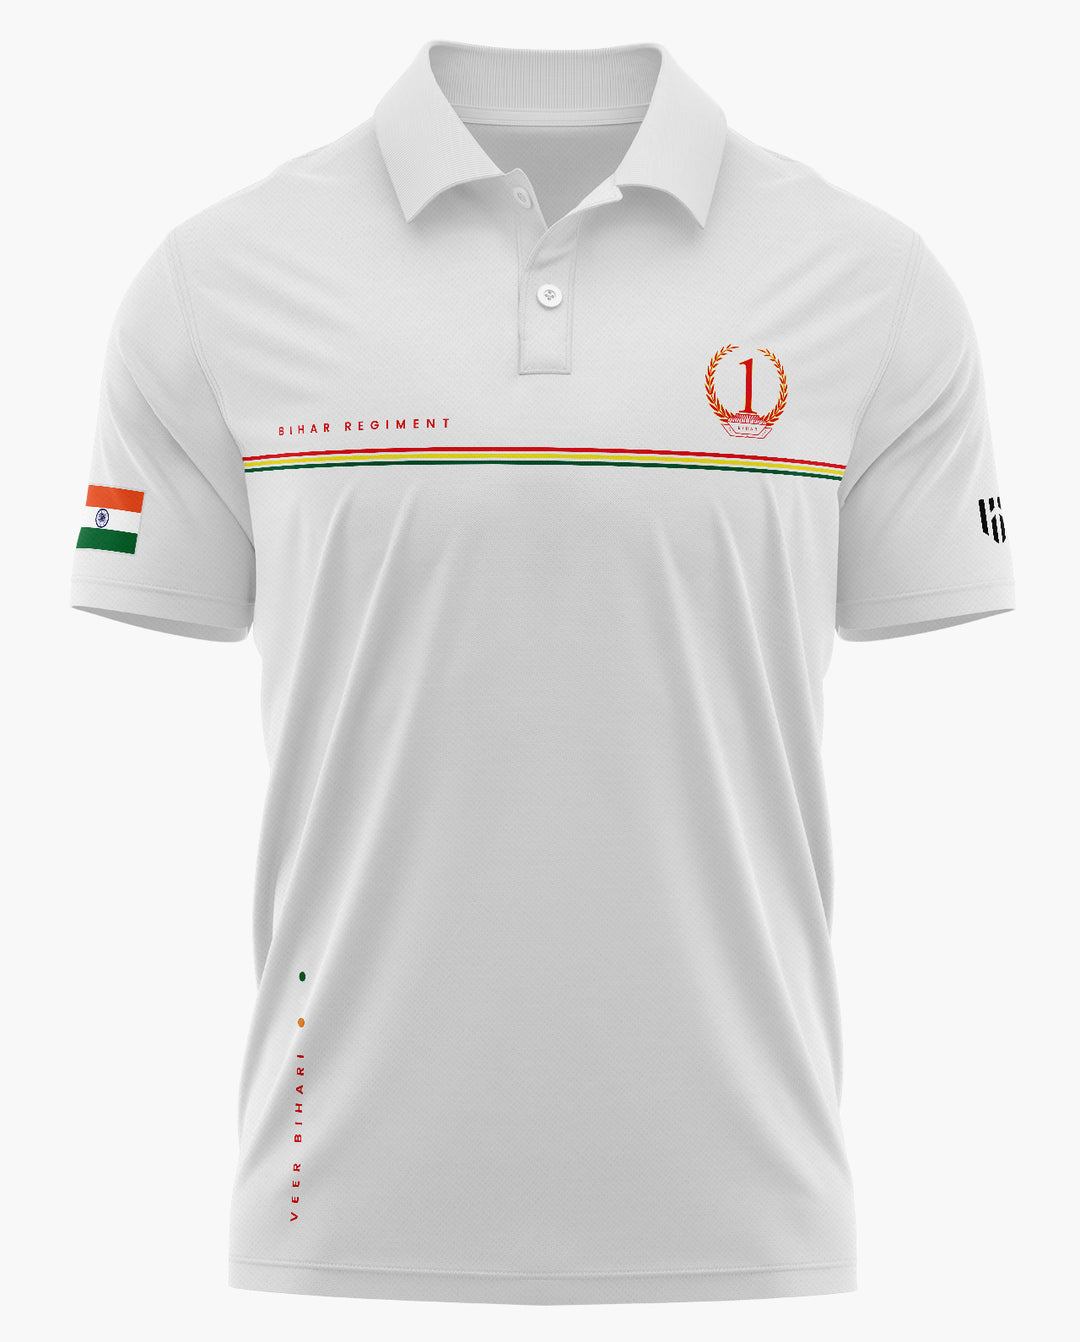 1 Bihar Regiment Polo T-Shirt